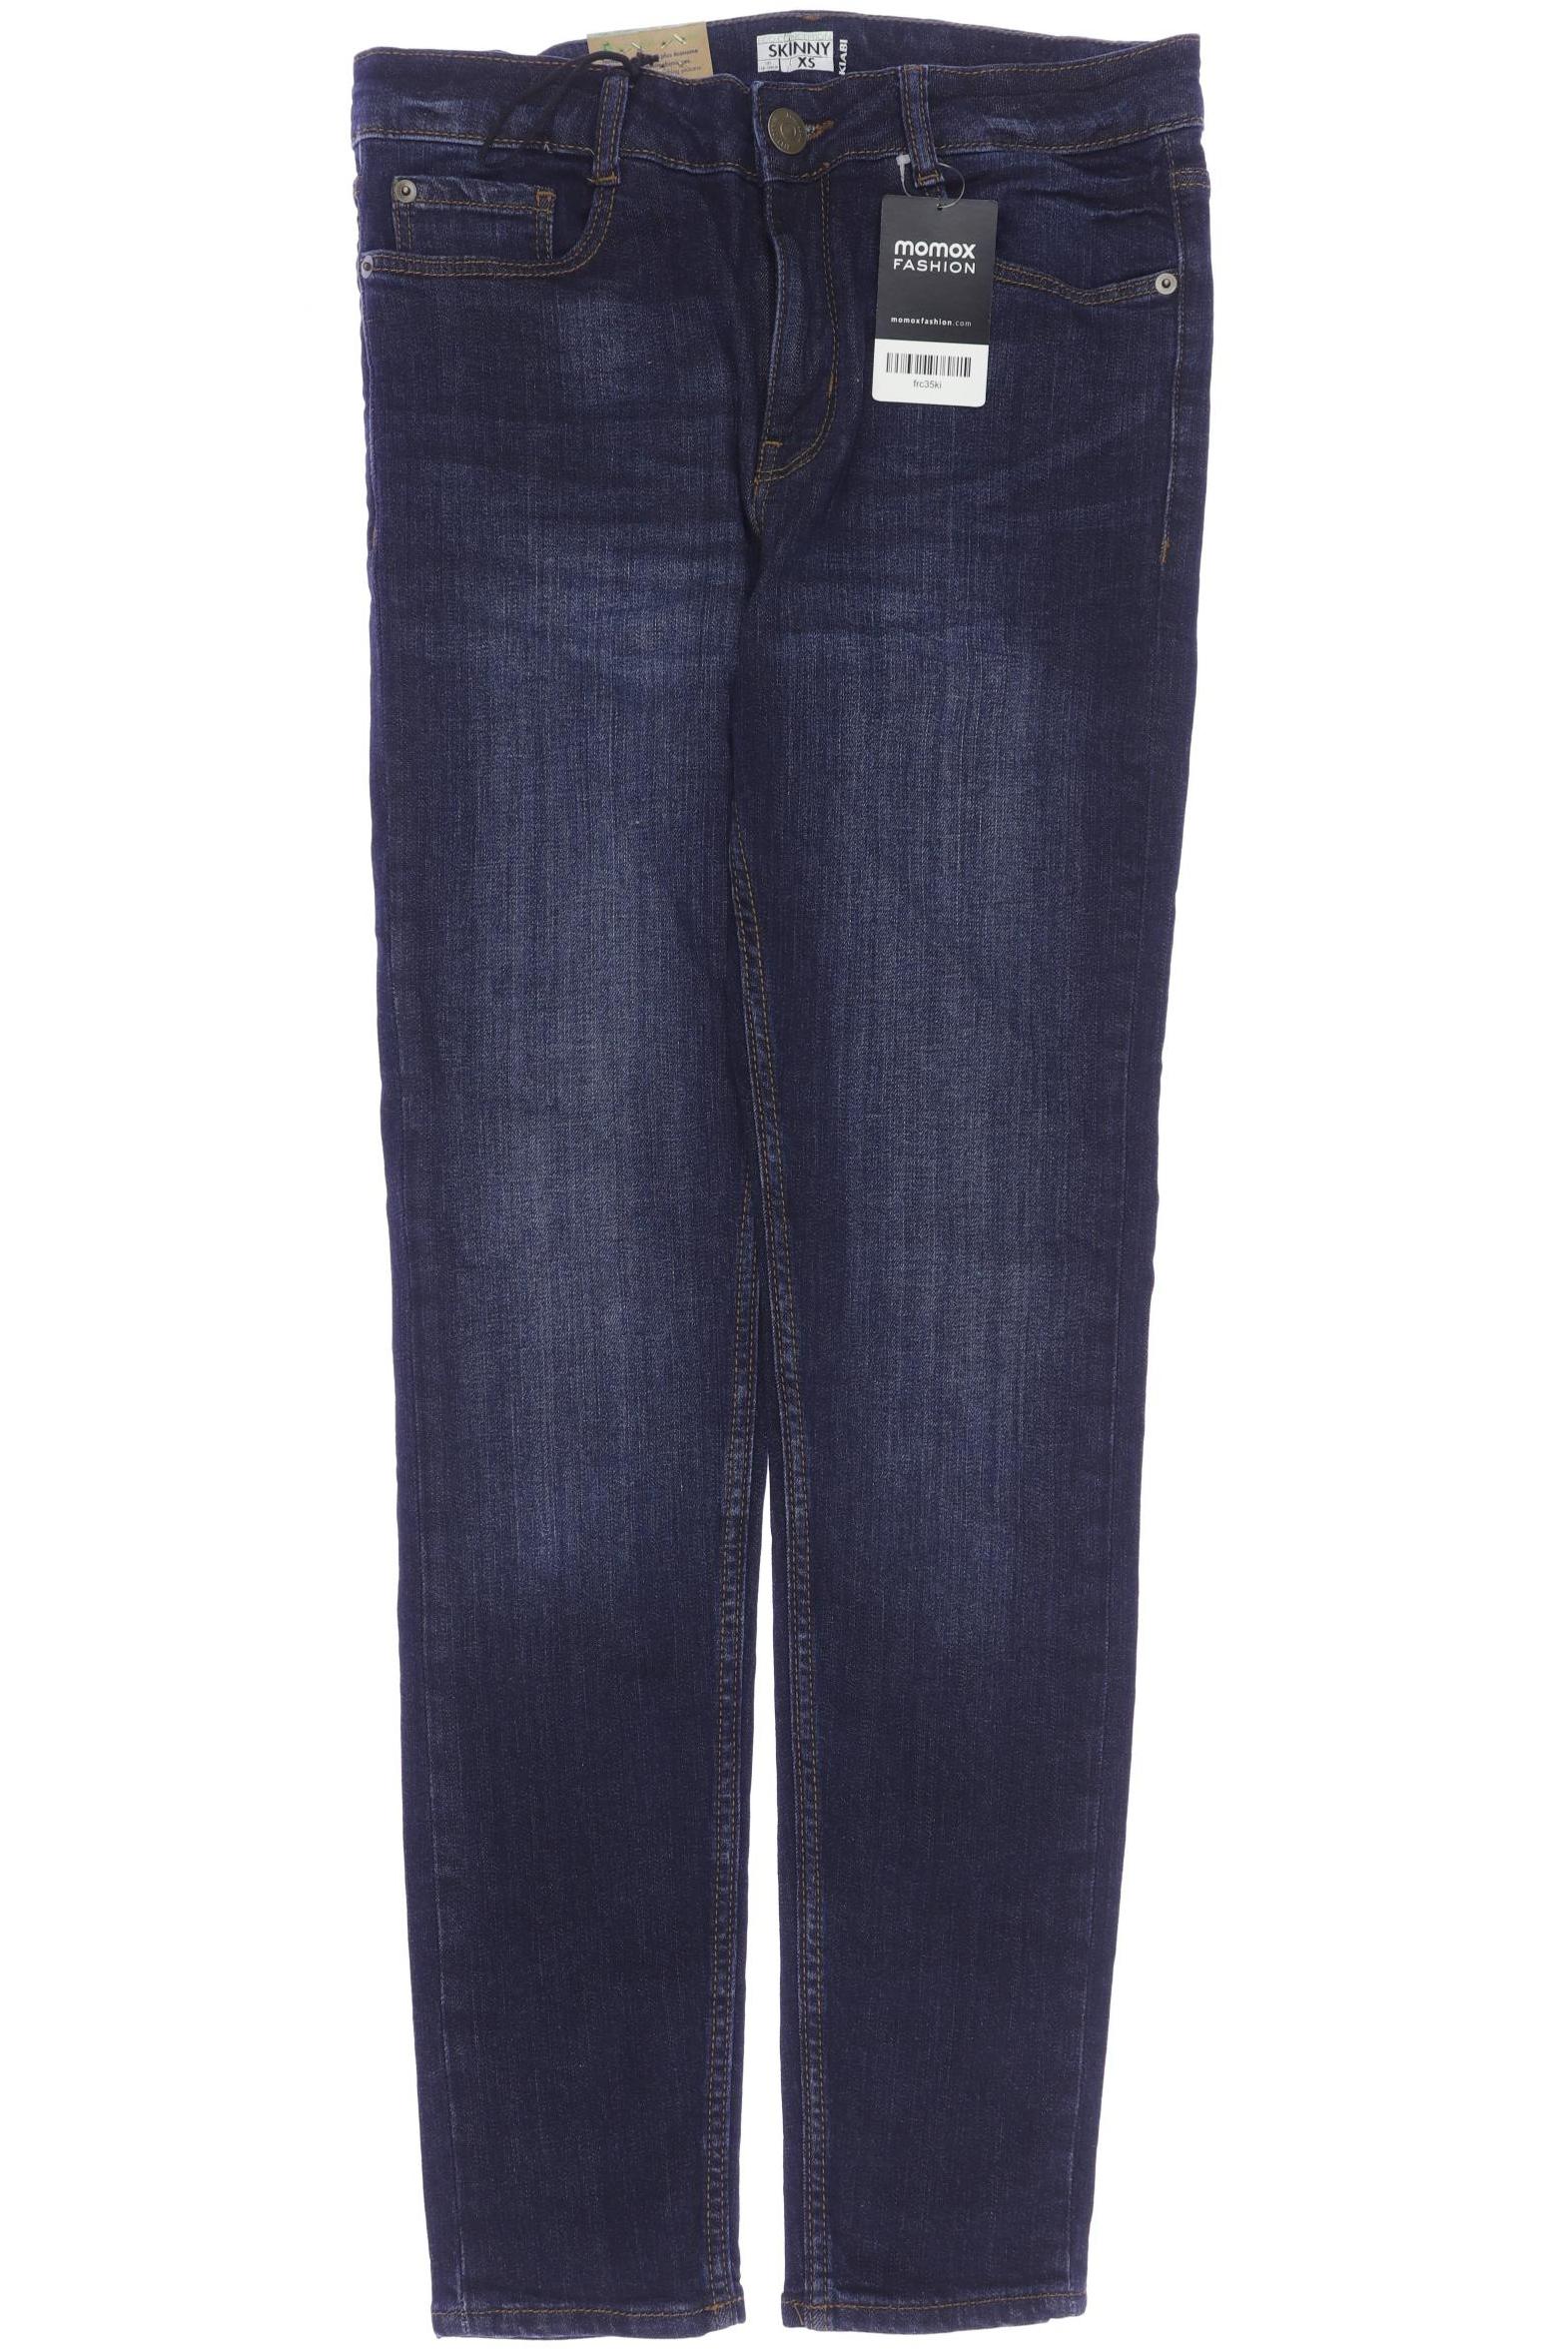 Kiabi Herren Jeans, marineblau, Gr. 158 von Kiabi